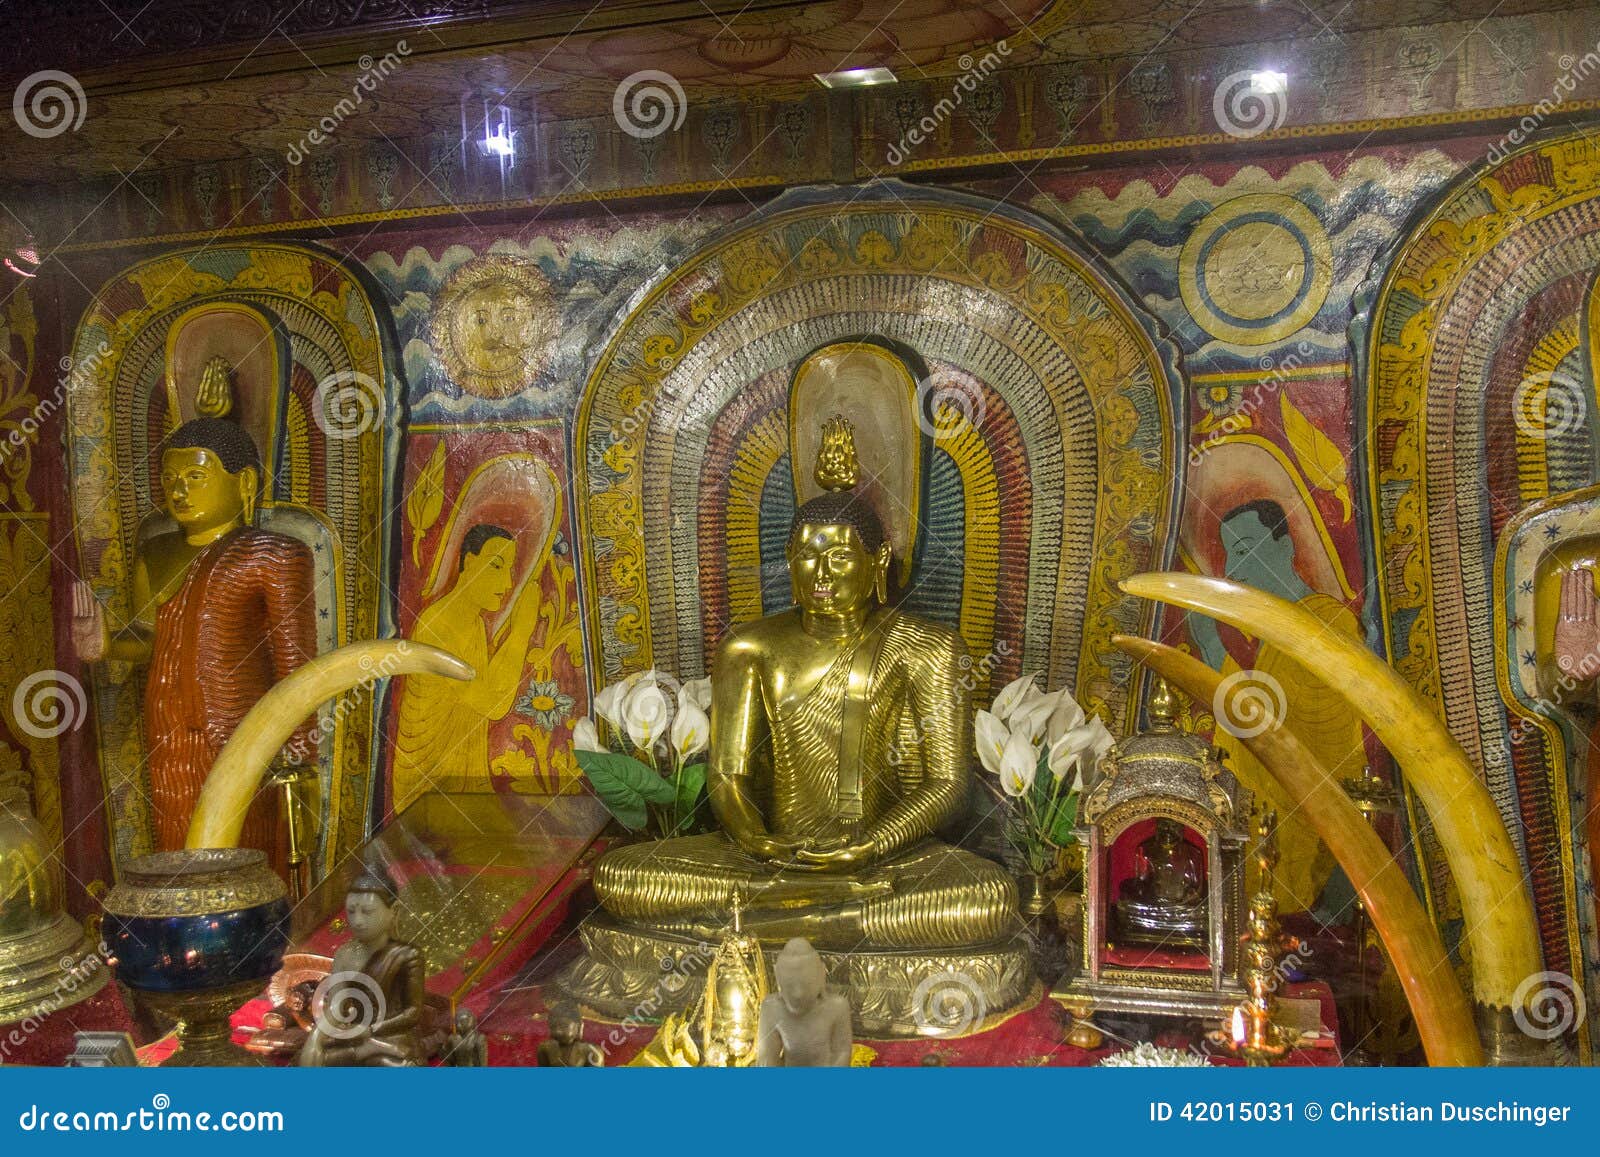 Tempio di Kandy. KANDY, SRI LANKA: Statua di Buddha in tempio della reliquia sacra del dente